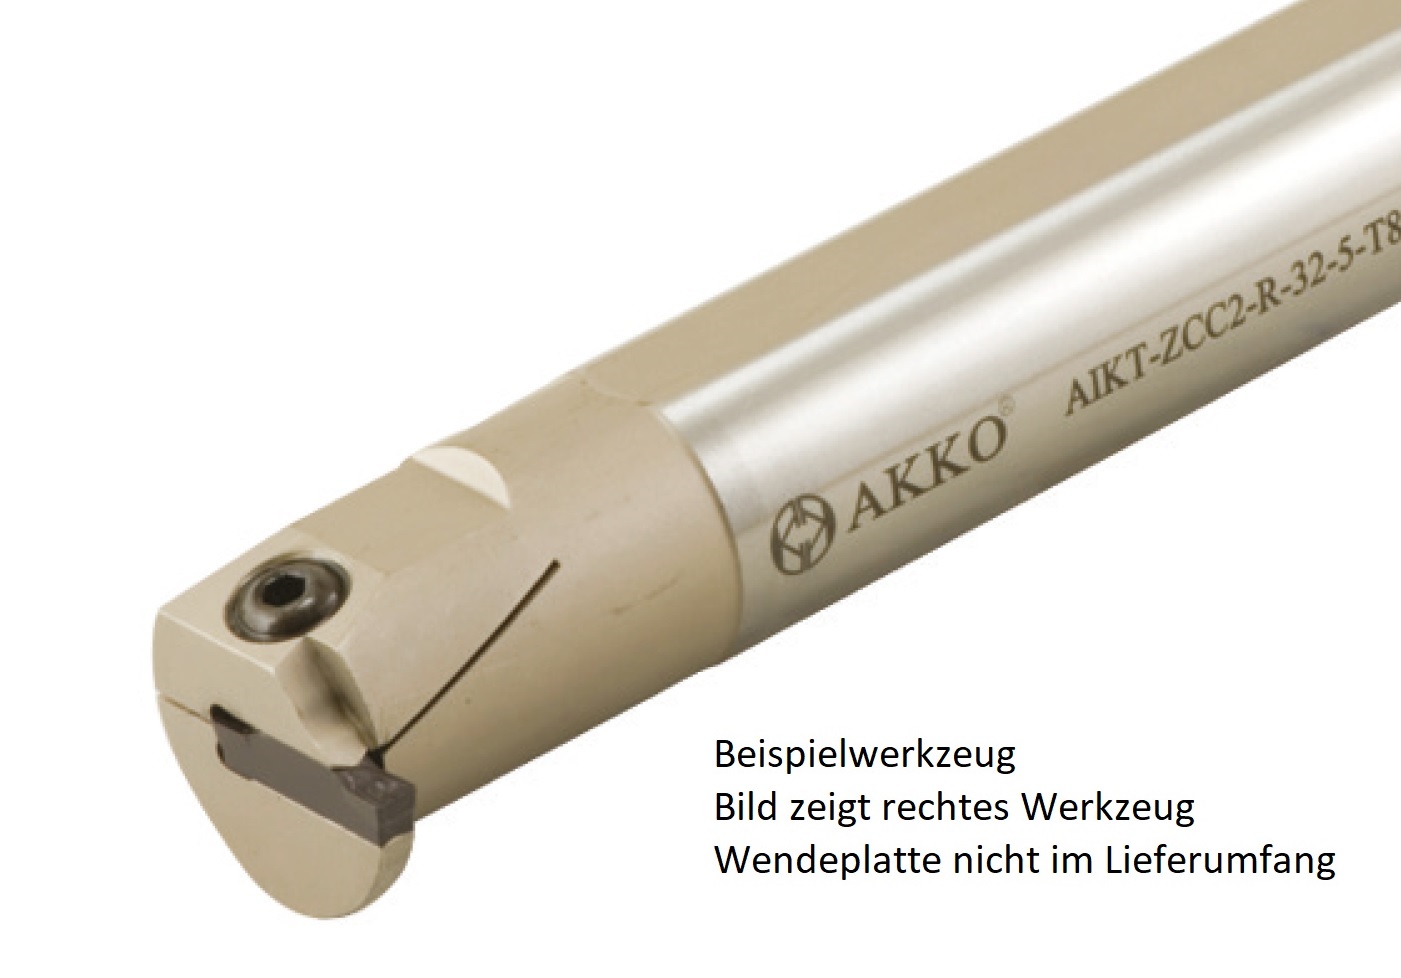 AKKO-Innen-Stechhalter, kompatibel mit ZCC-Stechplatte Z.HD-5
Schaft-ø 32, ohne Innenkühlung, rechts